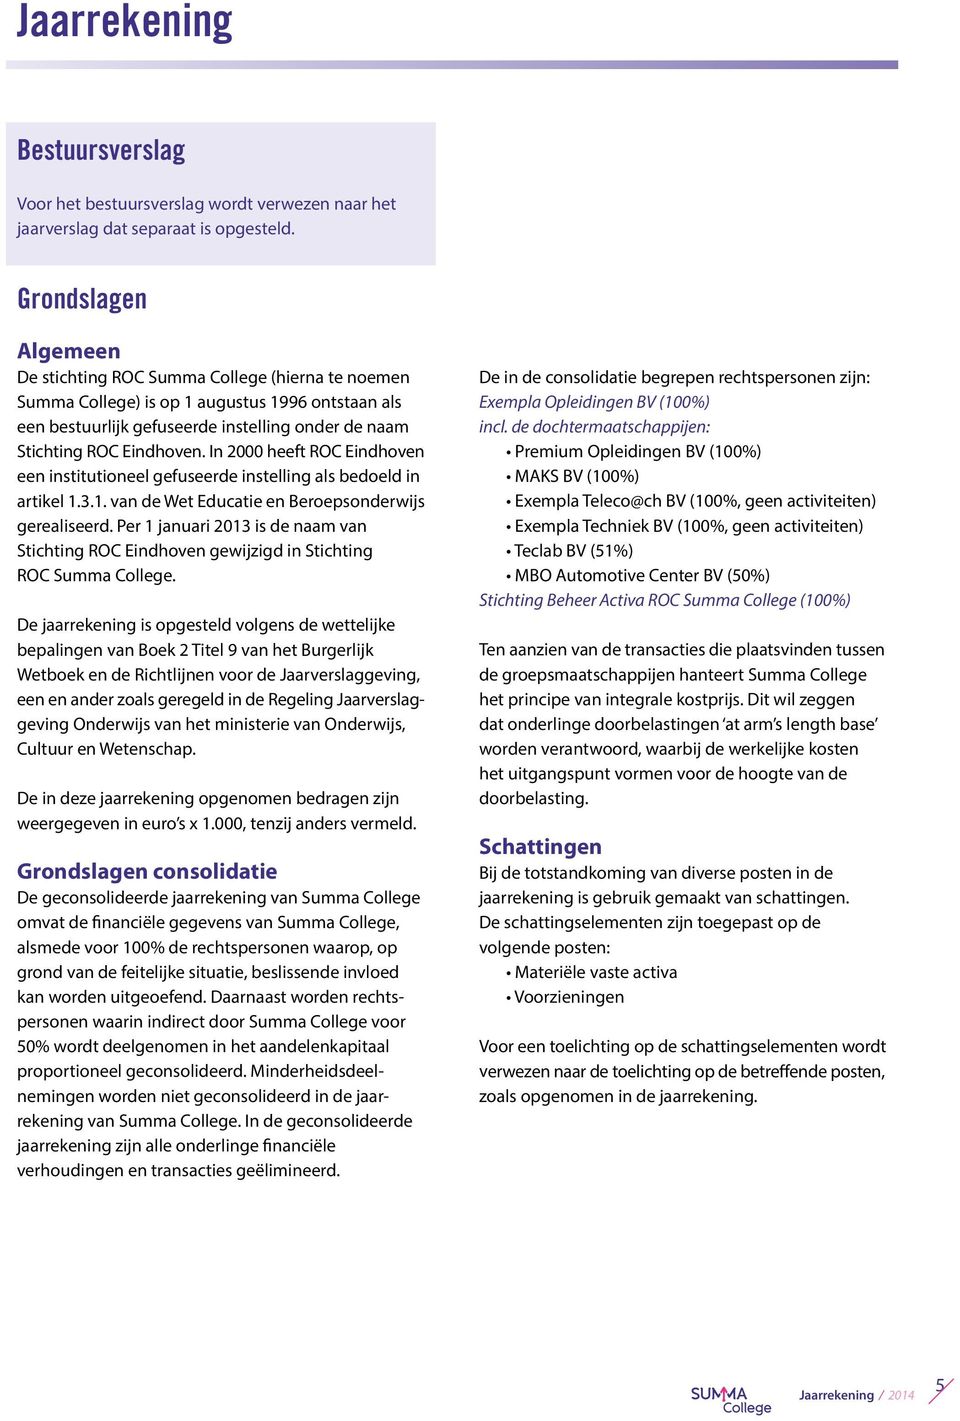 In 2000 heeft ROC Eindhoven een institutioneel gefuseerde instelling als bedoeld in artikel 1.3.1. van de Wet Educatie en Beroepsonderwijs gerealiseerd.